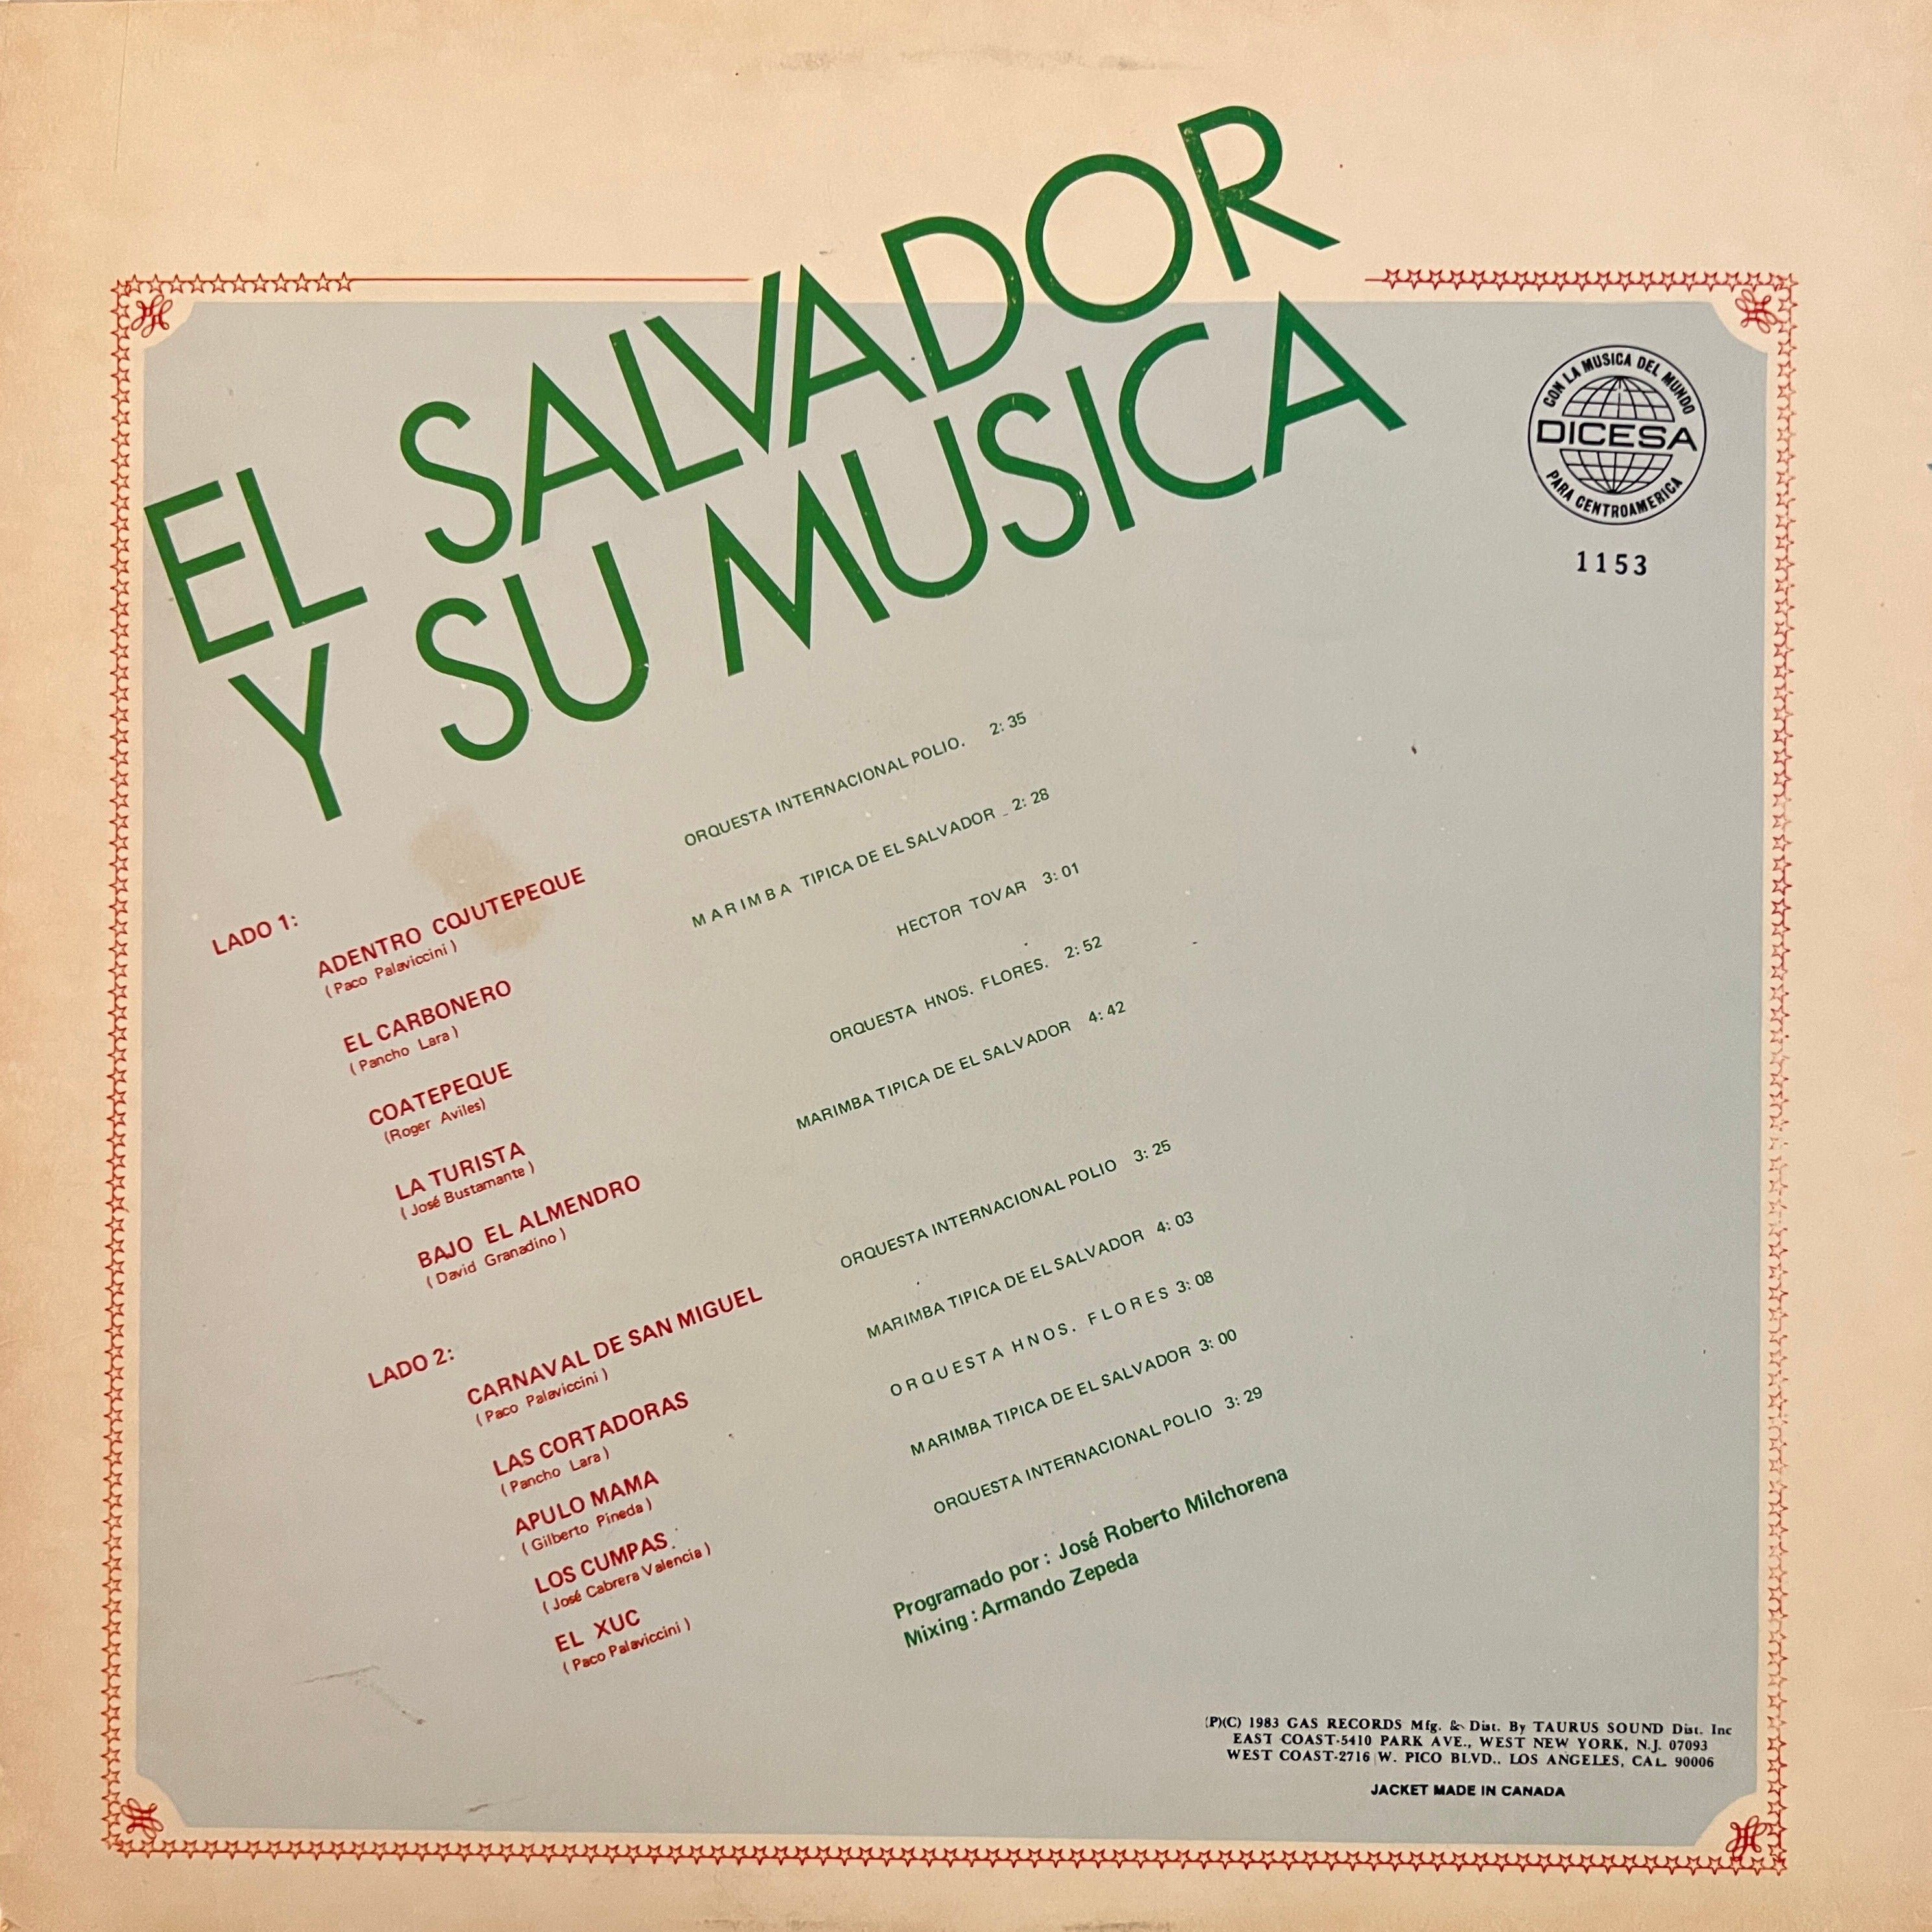 El Salvador Y Su Musica (1982, Dicesa - 1153) VG+